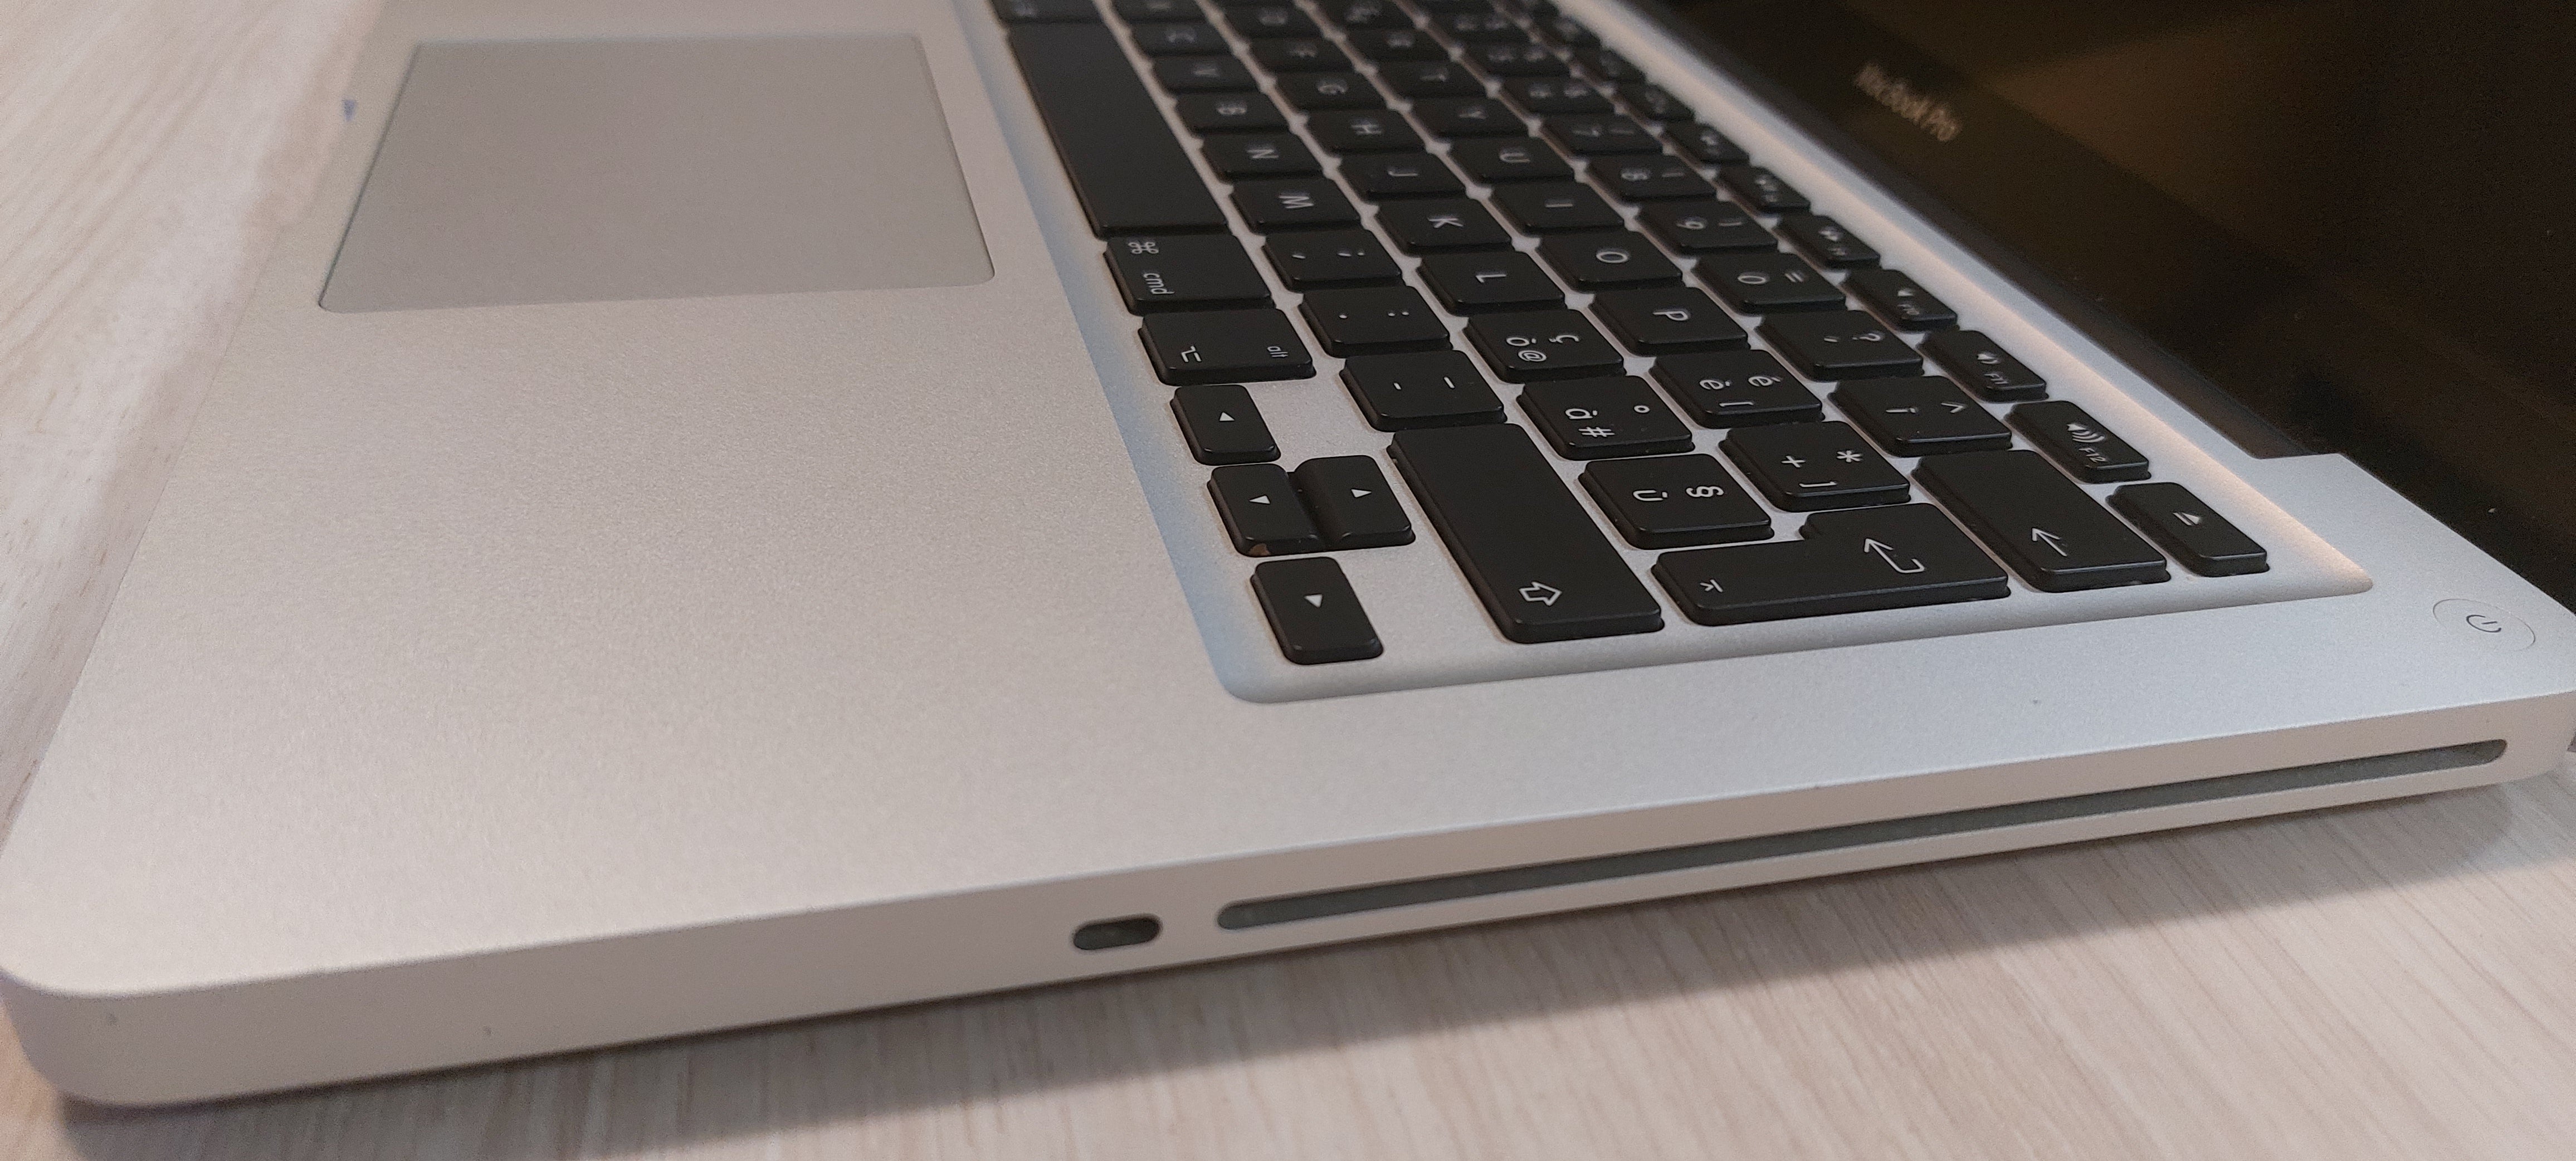 Notebook ricondizionato GRADO A MacBook Pro - Processore: i5 Dual Core 3210 M - Ram: 4 GB 1600 Mhz - 13" - Unità ottica - Garanzia 1 anno